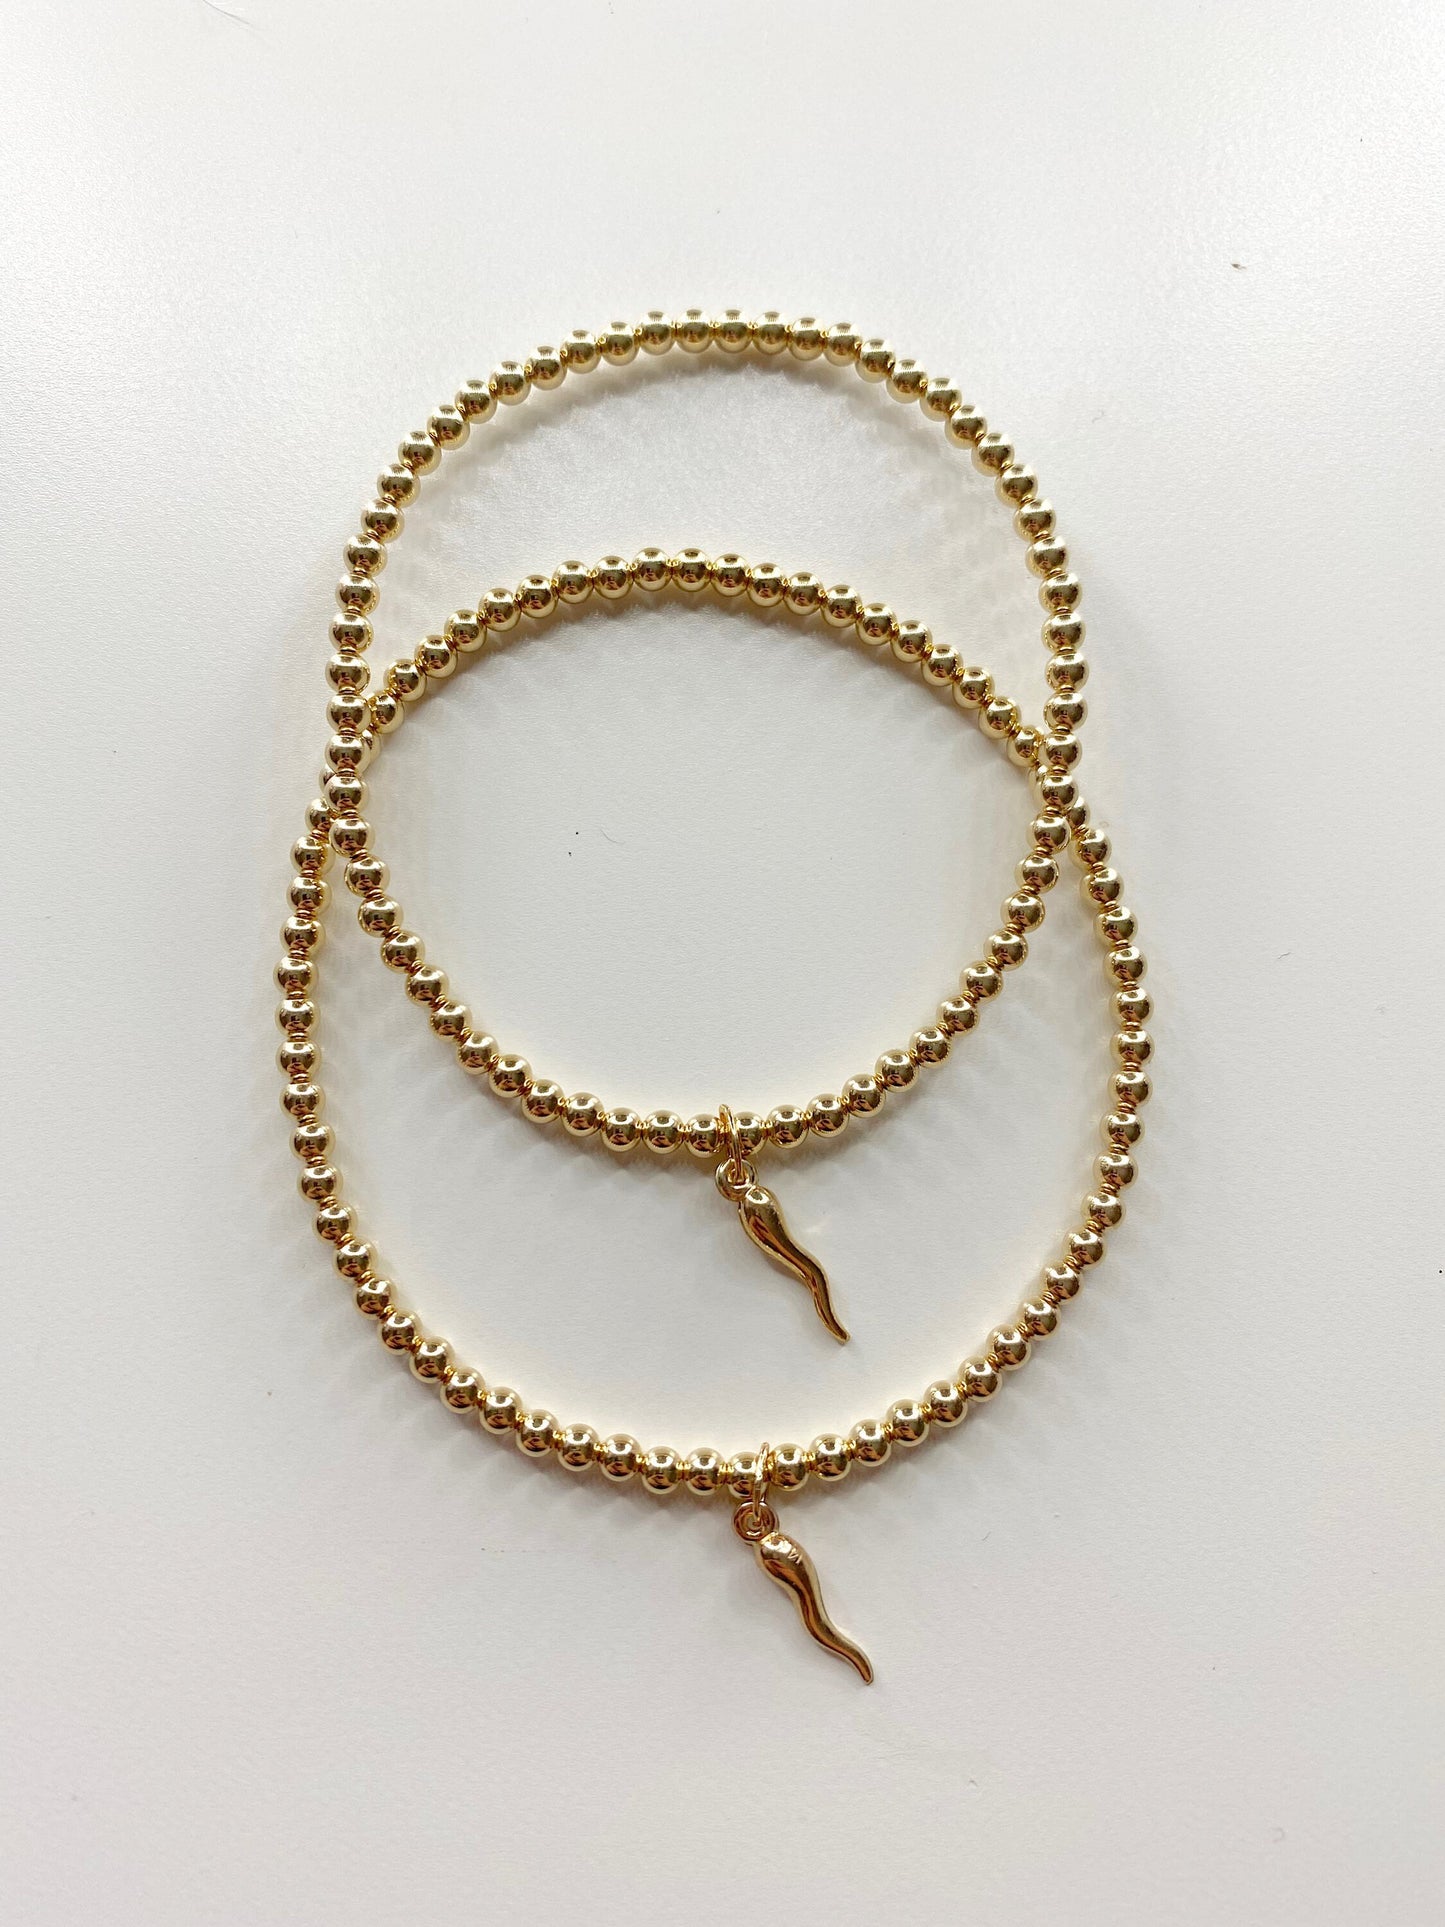 The Italian Horn Bracelet